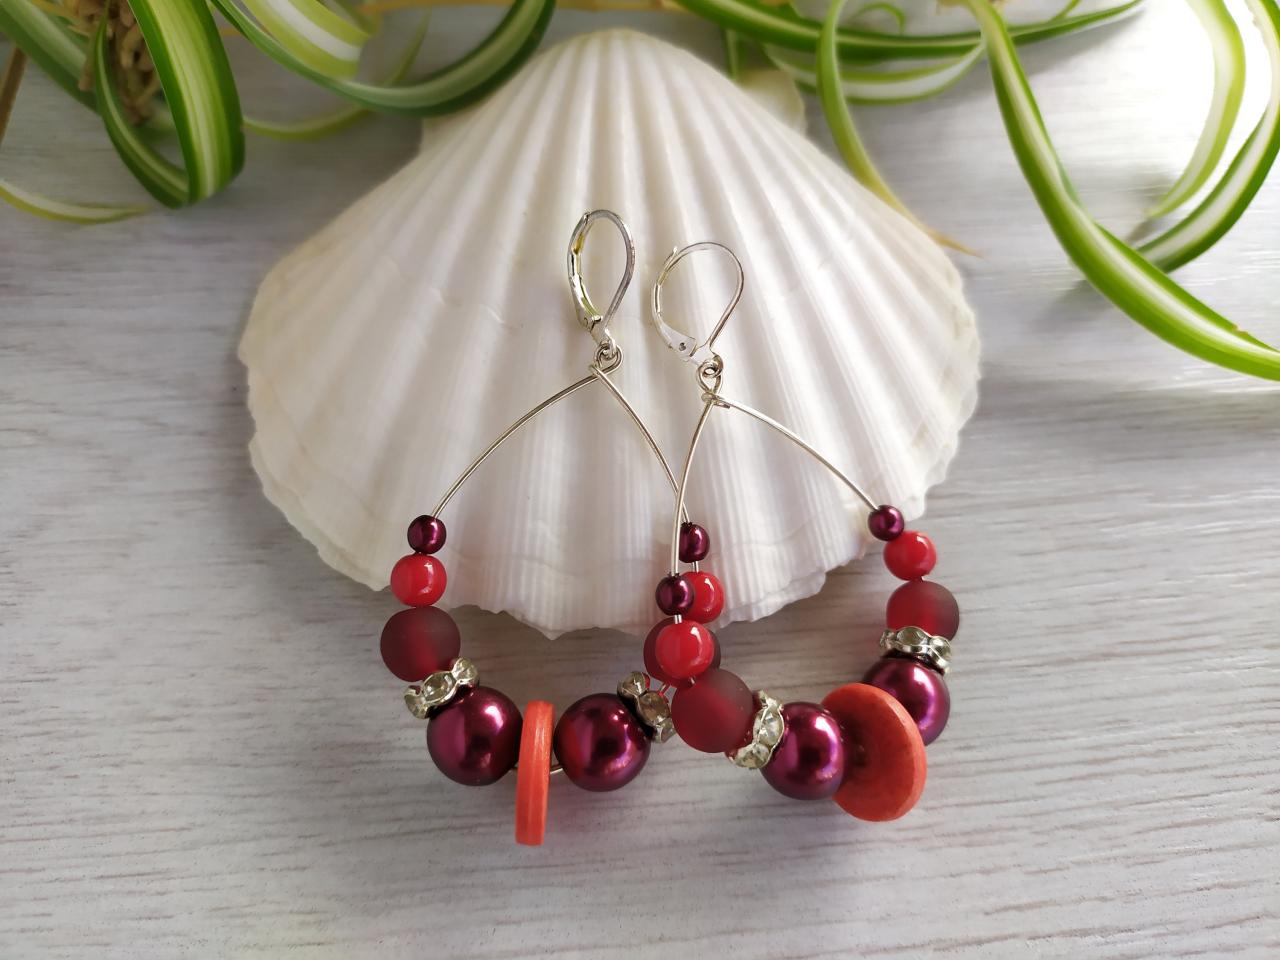 Red Hoop Earrings, Dark Red Dangle Earrings, Wire Red Hoops, Statement Earrings, Red And Silver Beaded Earrings, Bohemian Gift Earrings